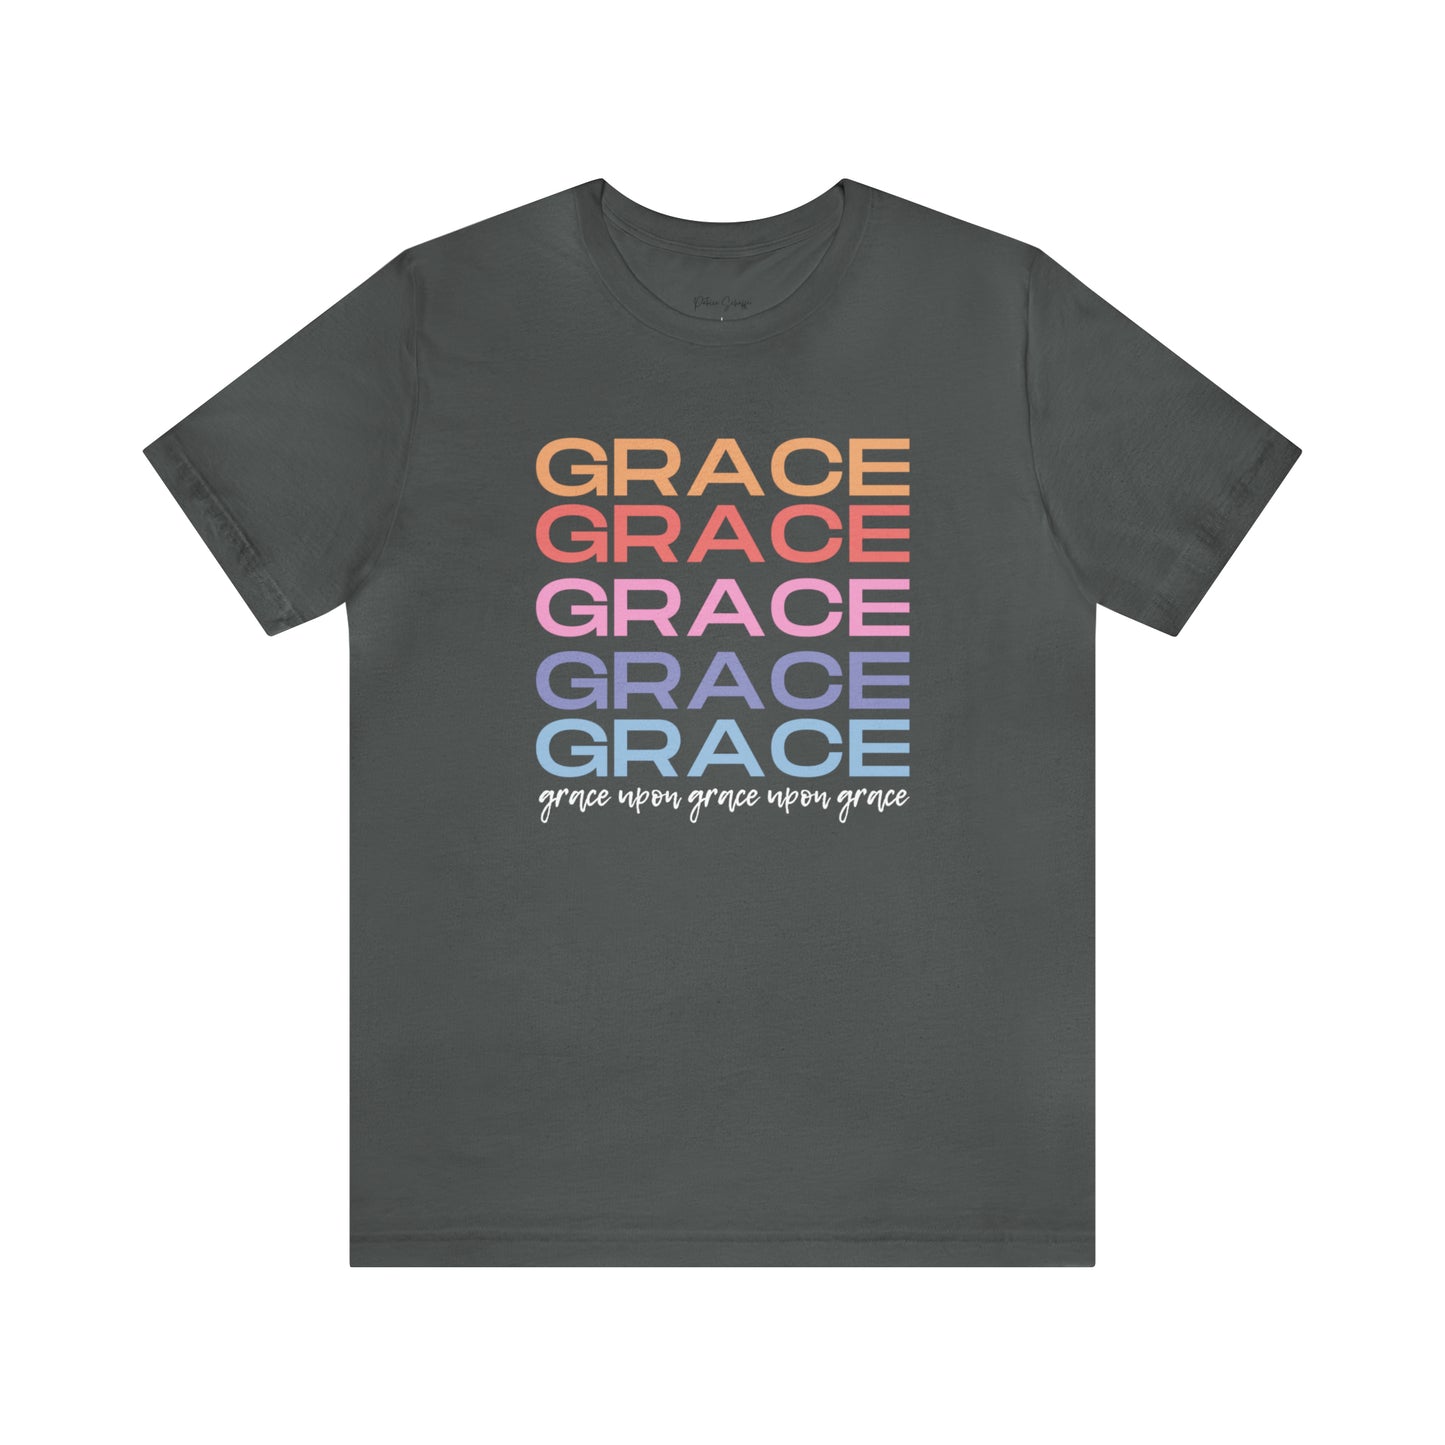 Grace Upon Grace Upon Grace